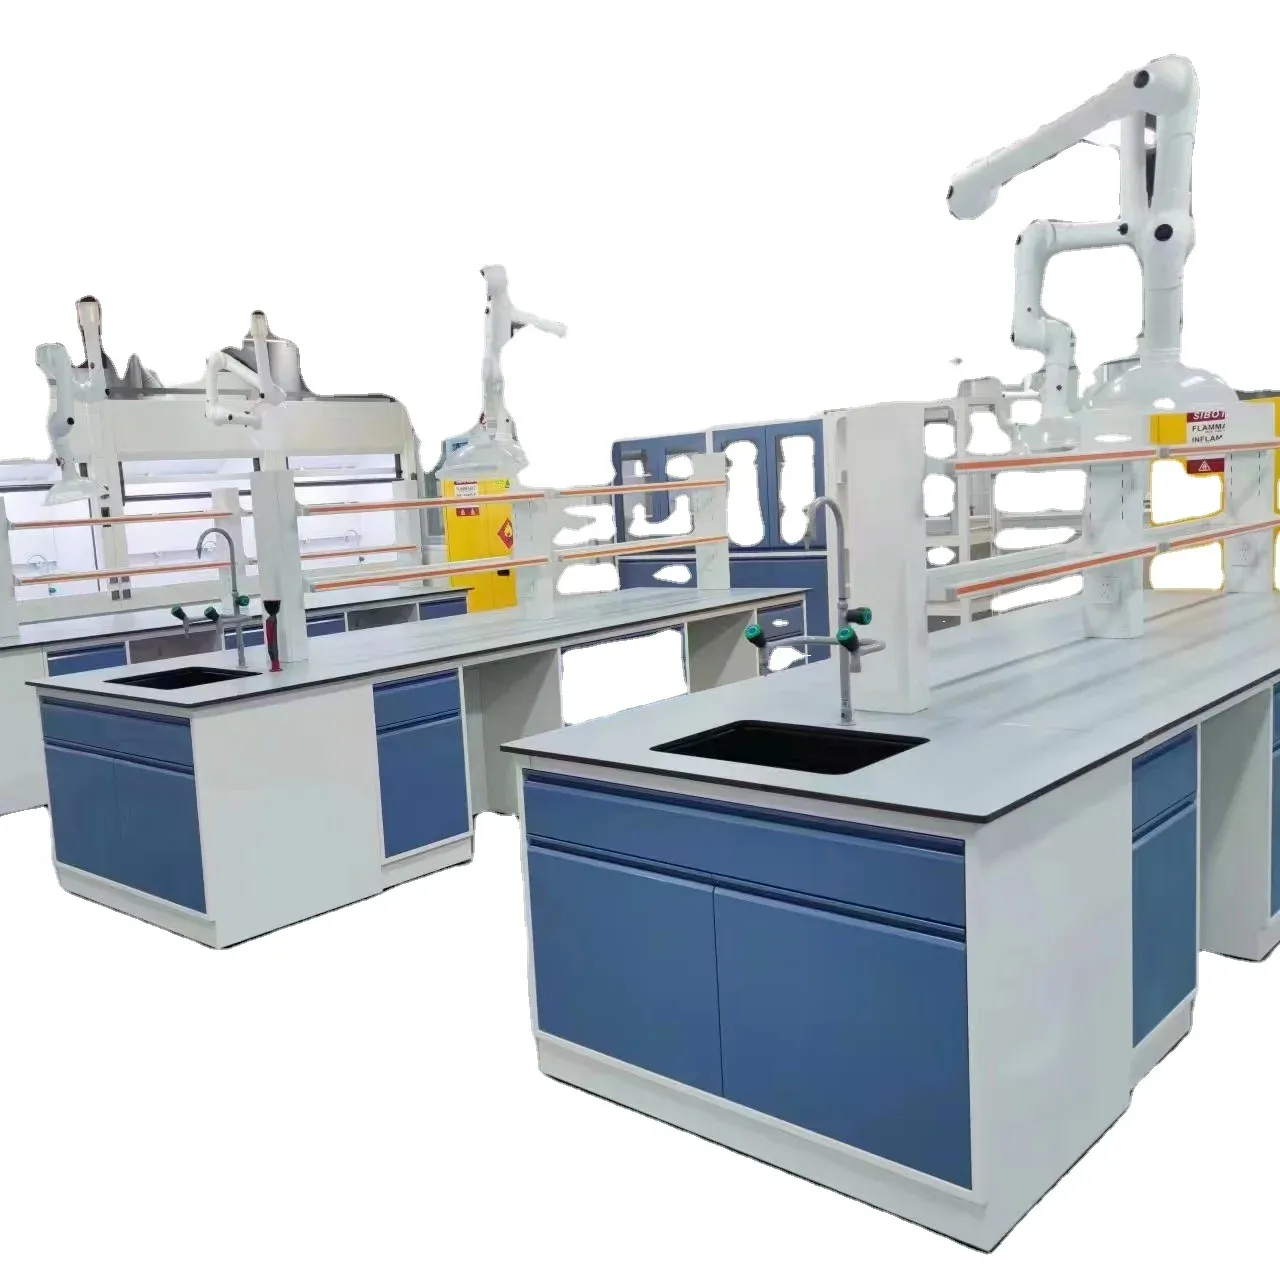 Peralatan Lab Kimia furnitur sekolah desain Workbench Pusat baja meja Lab rangka C